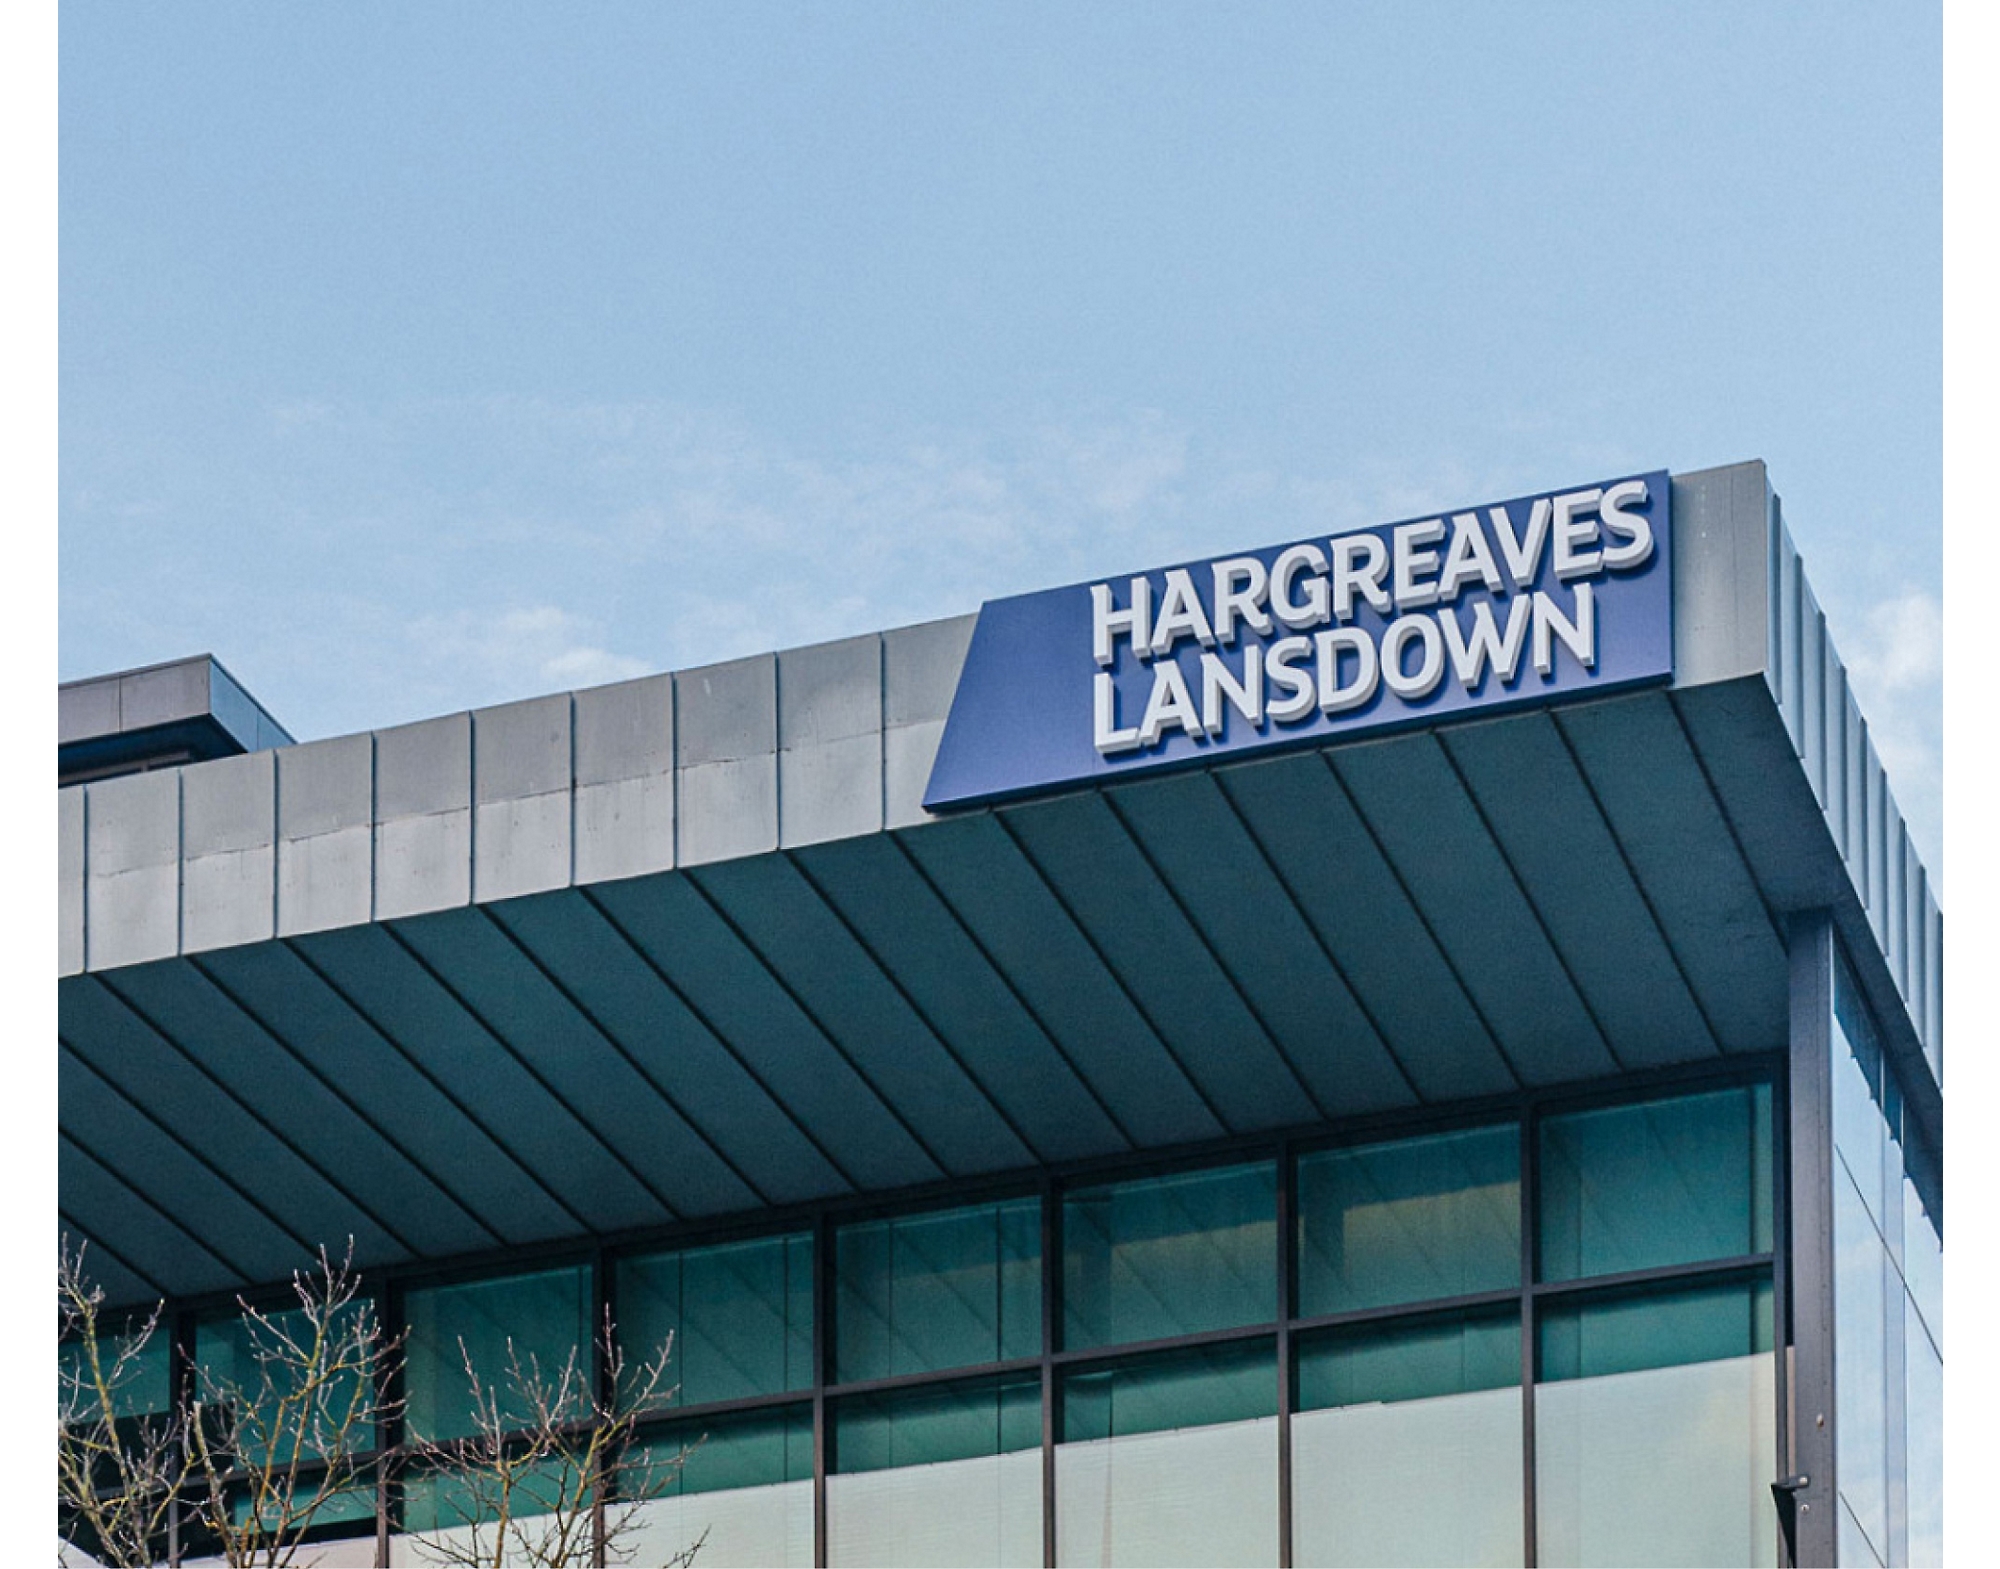 Das Zeichen "Hargreaves Lansdown" auf einem modernen Gebäude mit klarem Himmel im Hintergrund.